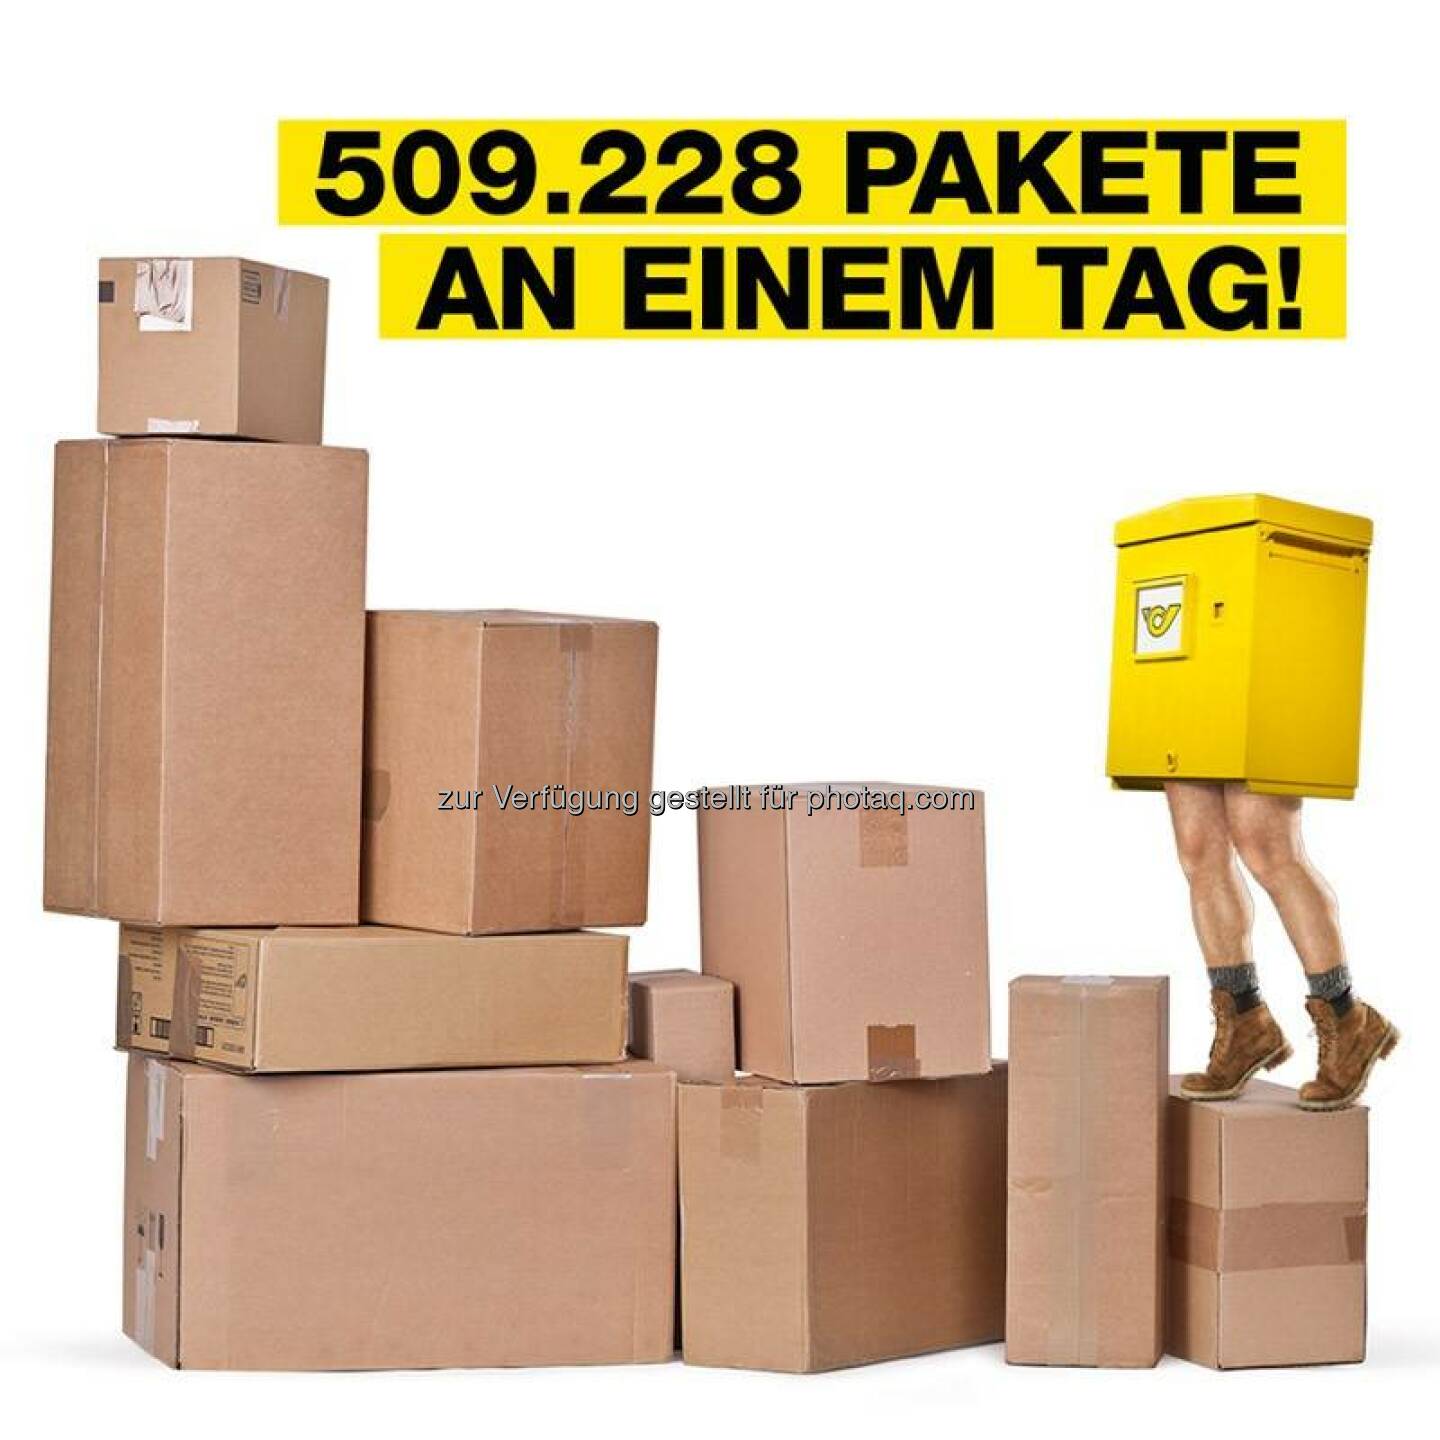 Österreichische Post: Ein neuer Weihnachts-Rekord: 509.228 Pakete wurden an einem einzigen Dezembertag zugestellt. DANKE an unsere MitarbeiterInnen für diesen tollen Einsatz!!!  Source: http://facebook.com/unserepost